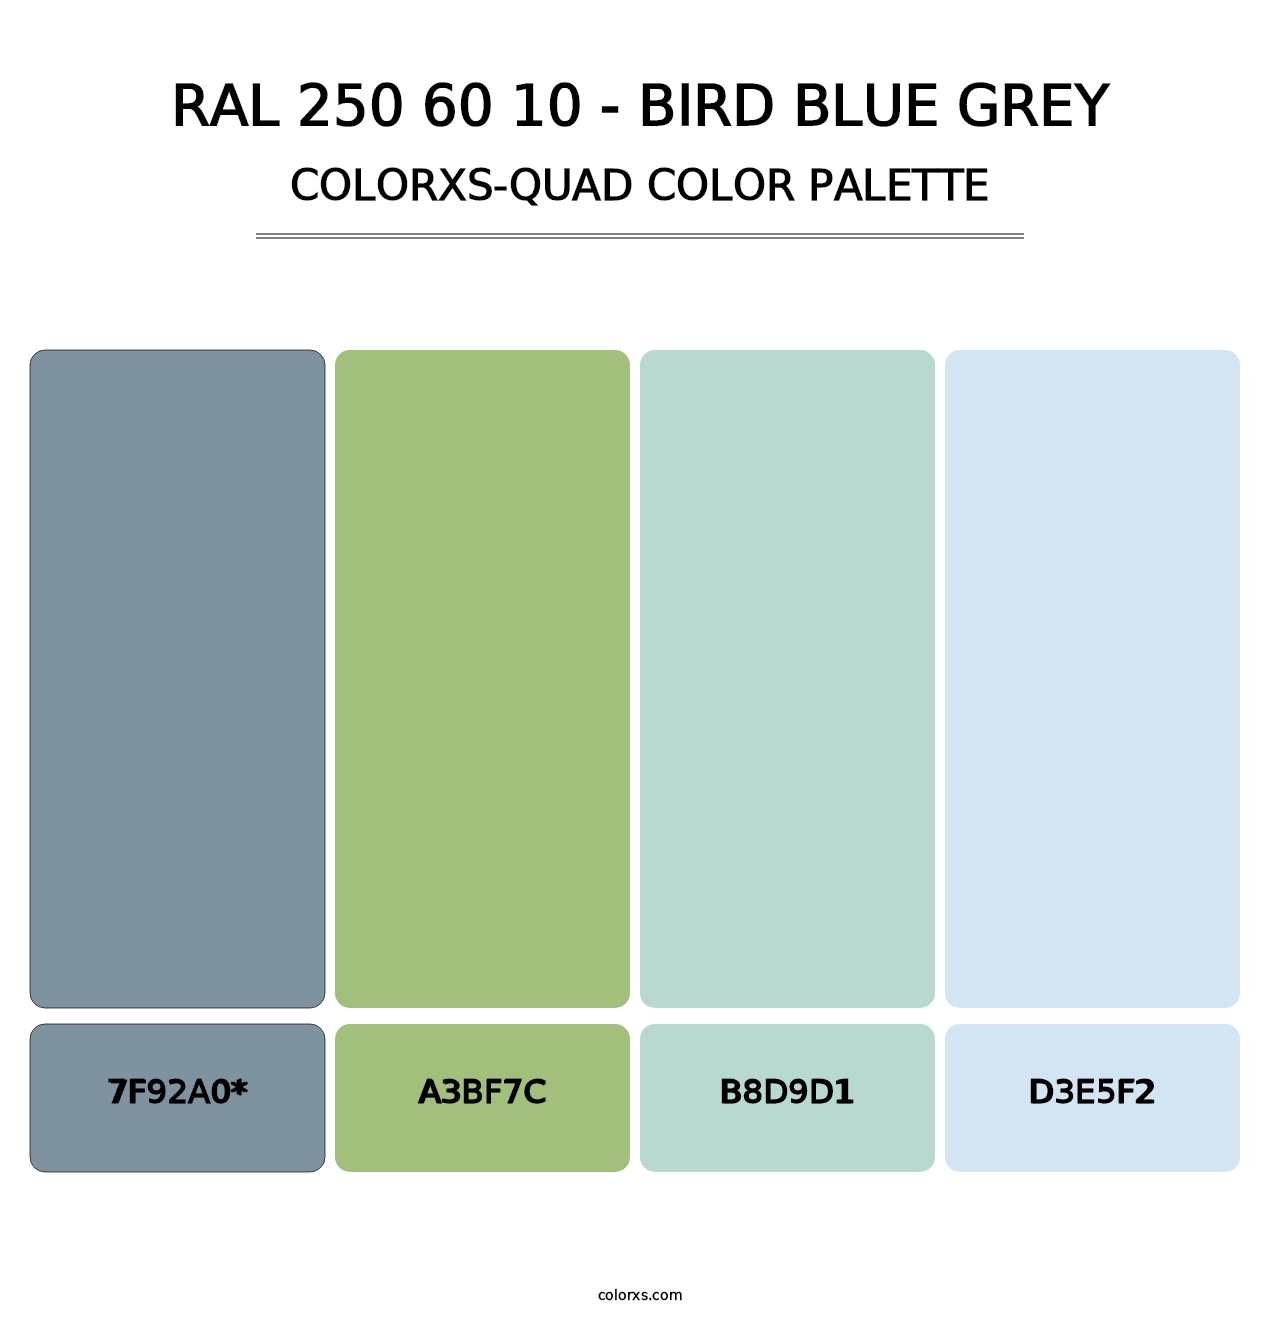 RAL 250 60 10 - Bird Blue Grey - Colorxs Quad Palette